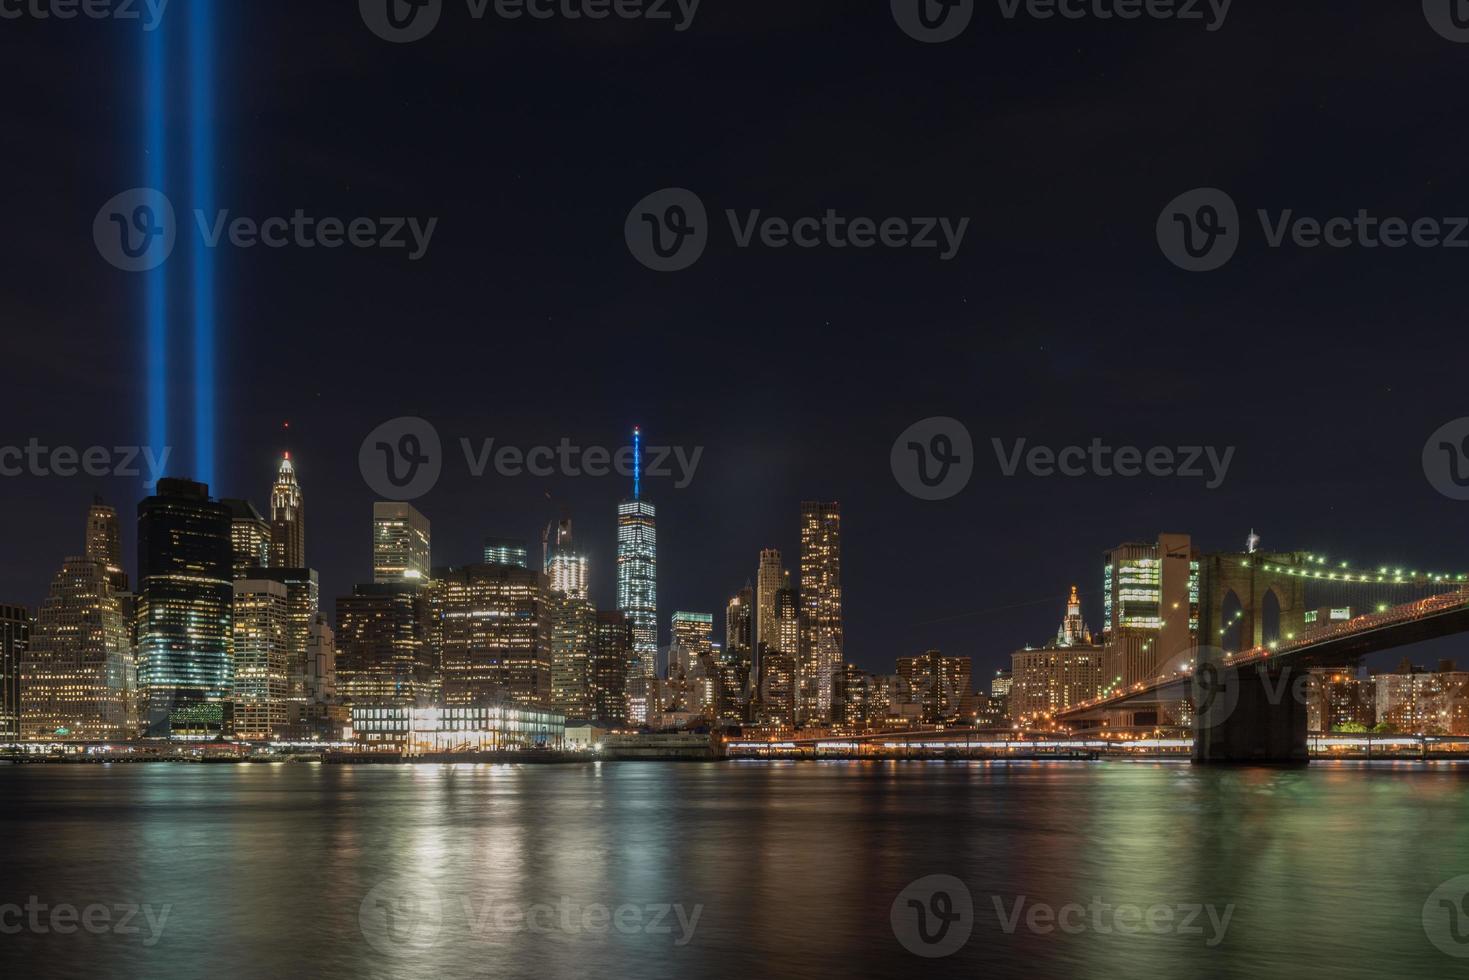 new york city manhattan skyline du centre-ville la nuit avec l'hommage à la lumière à la mémoire du 11 septembre. photo